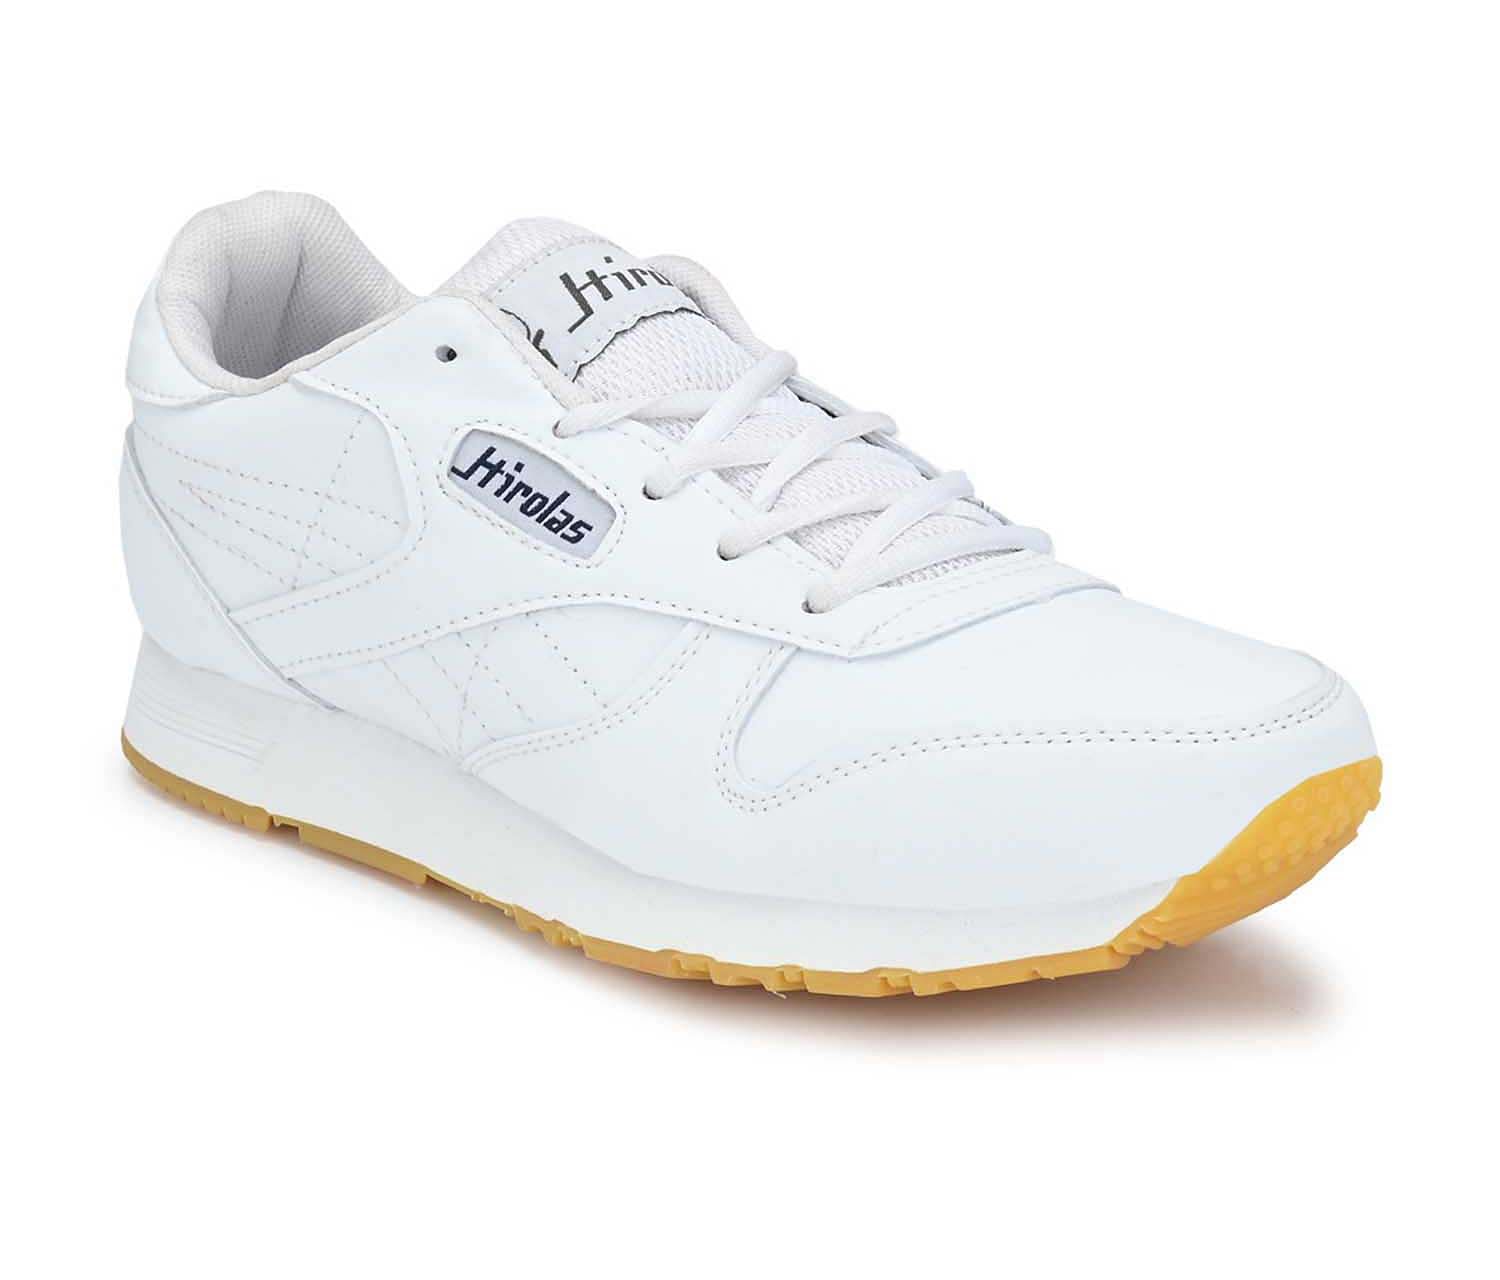 Pair-it Men's Sports Shoes - White-LZ-SPORTS019